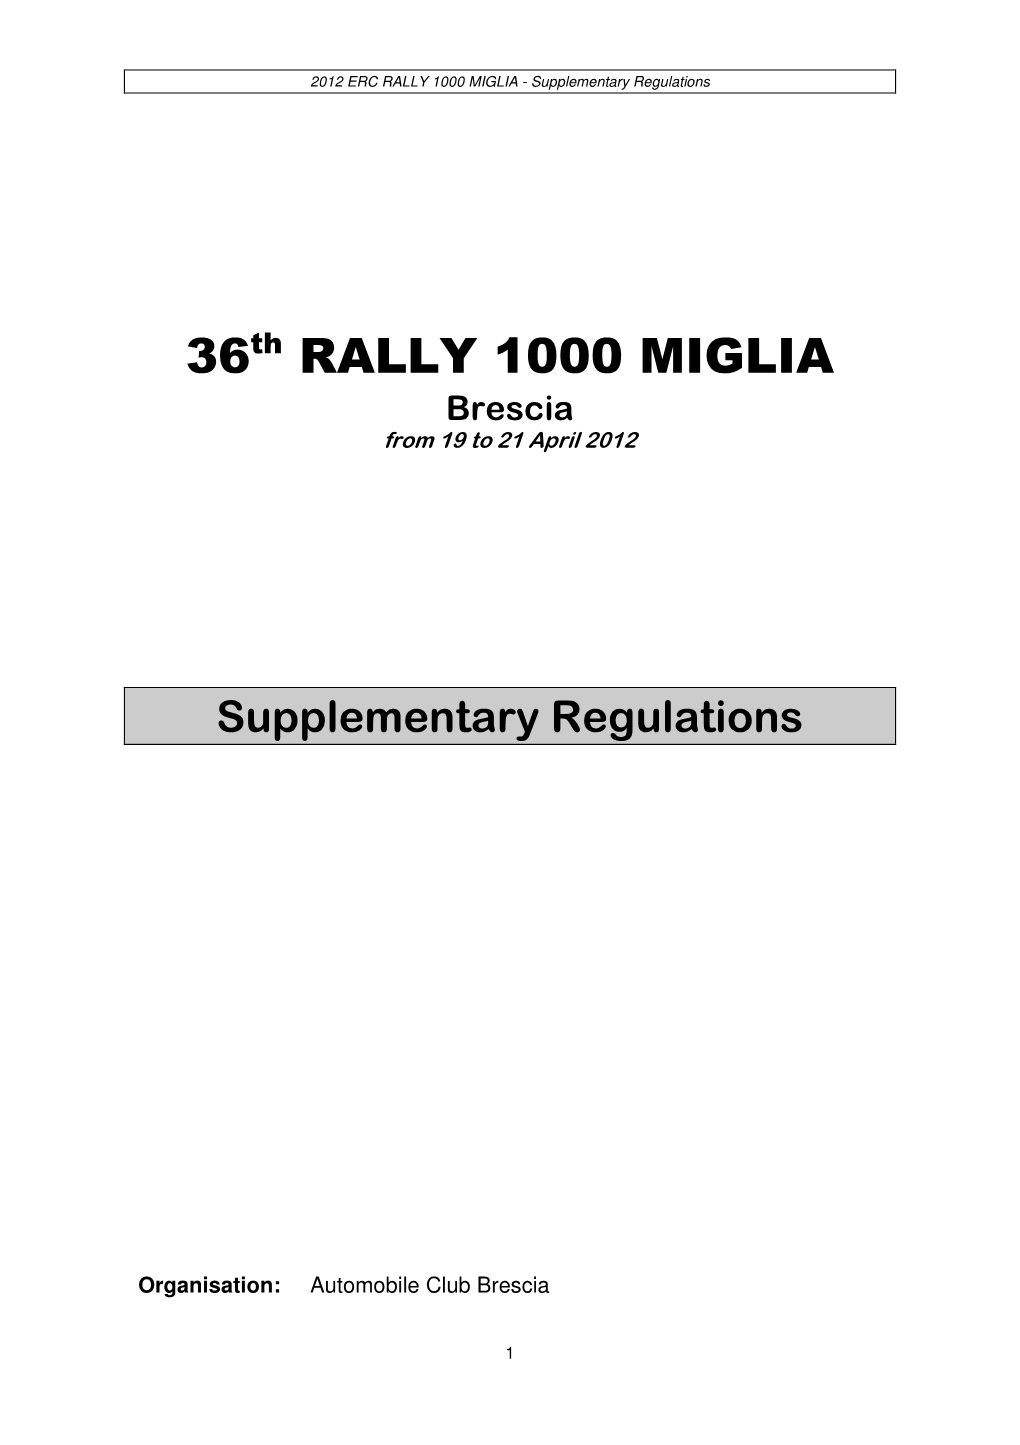 36Th RALLY 1000 MIGLIA Brescia from 19 to 21 April 2012